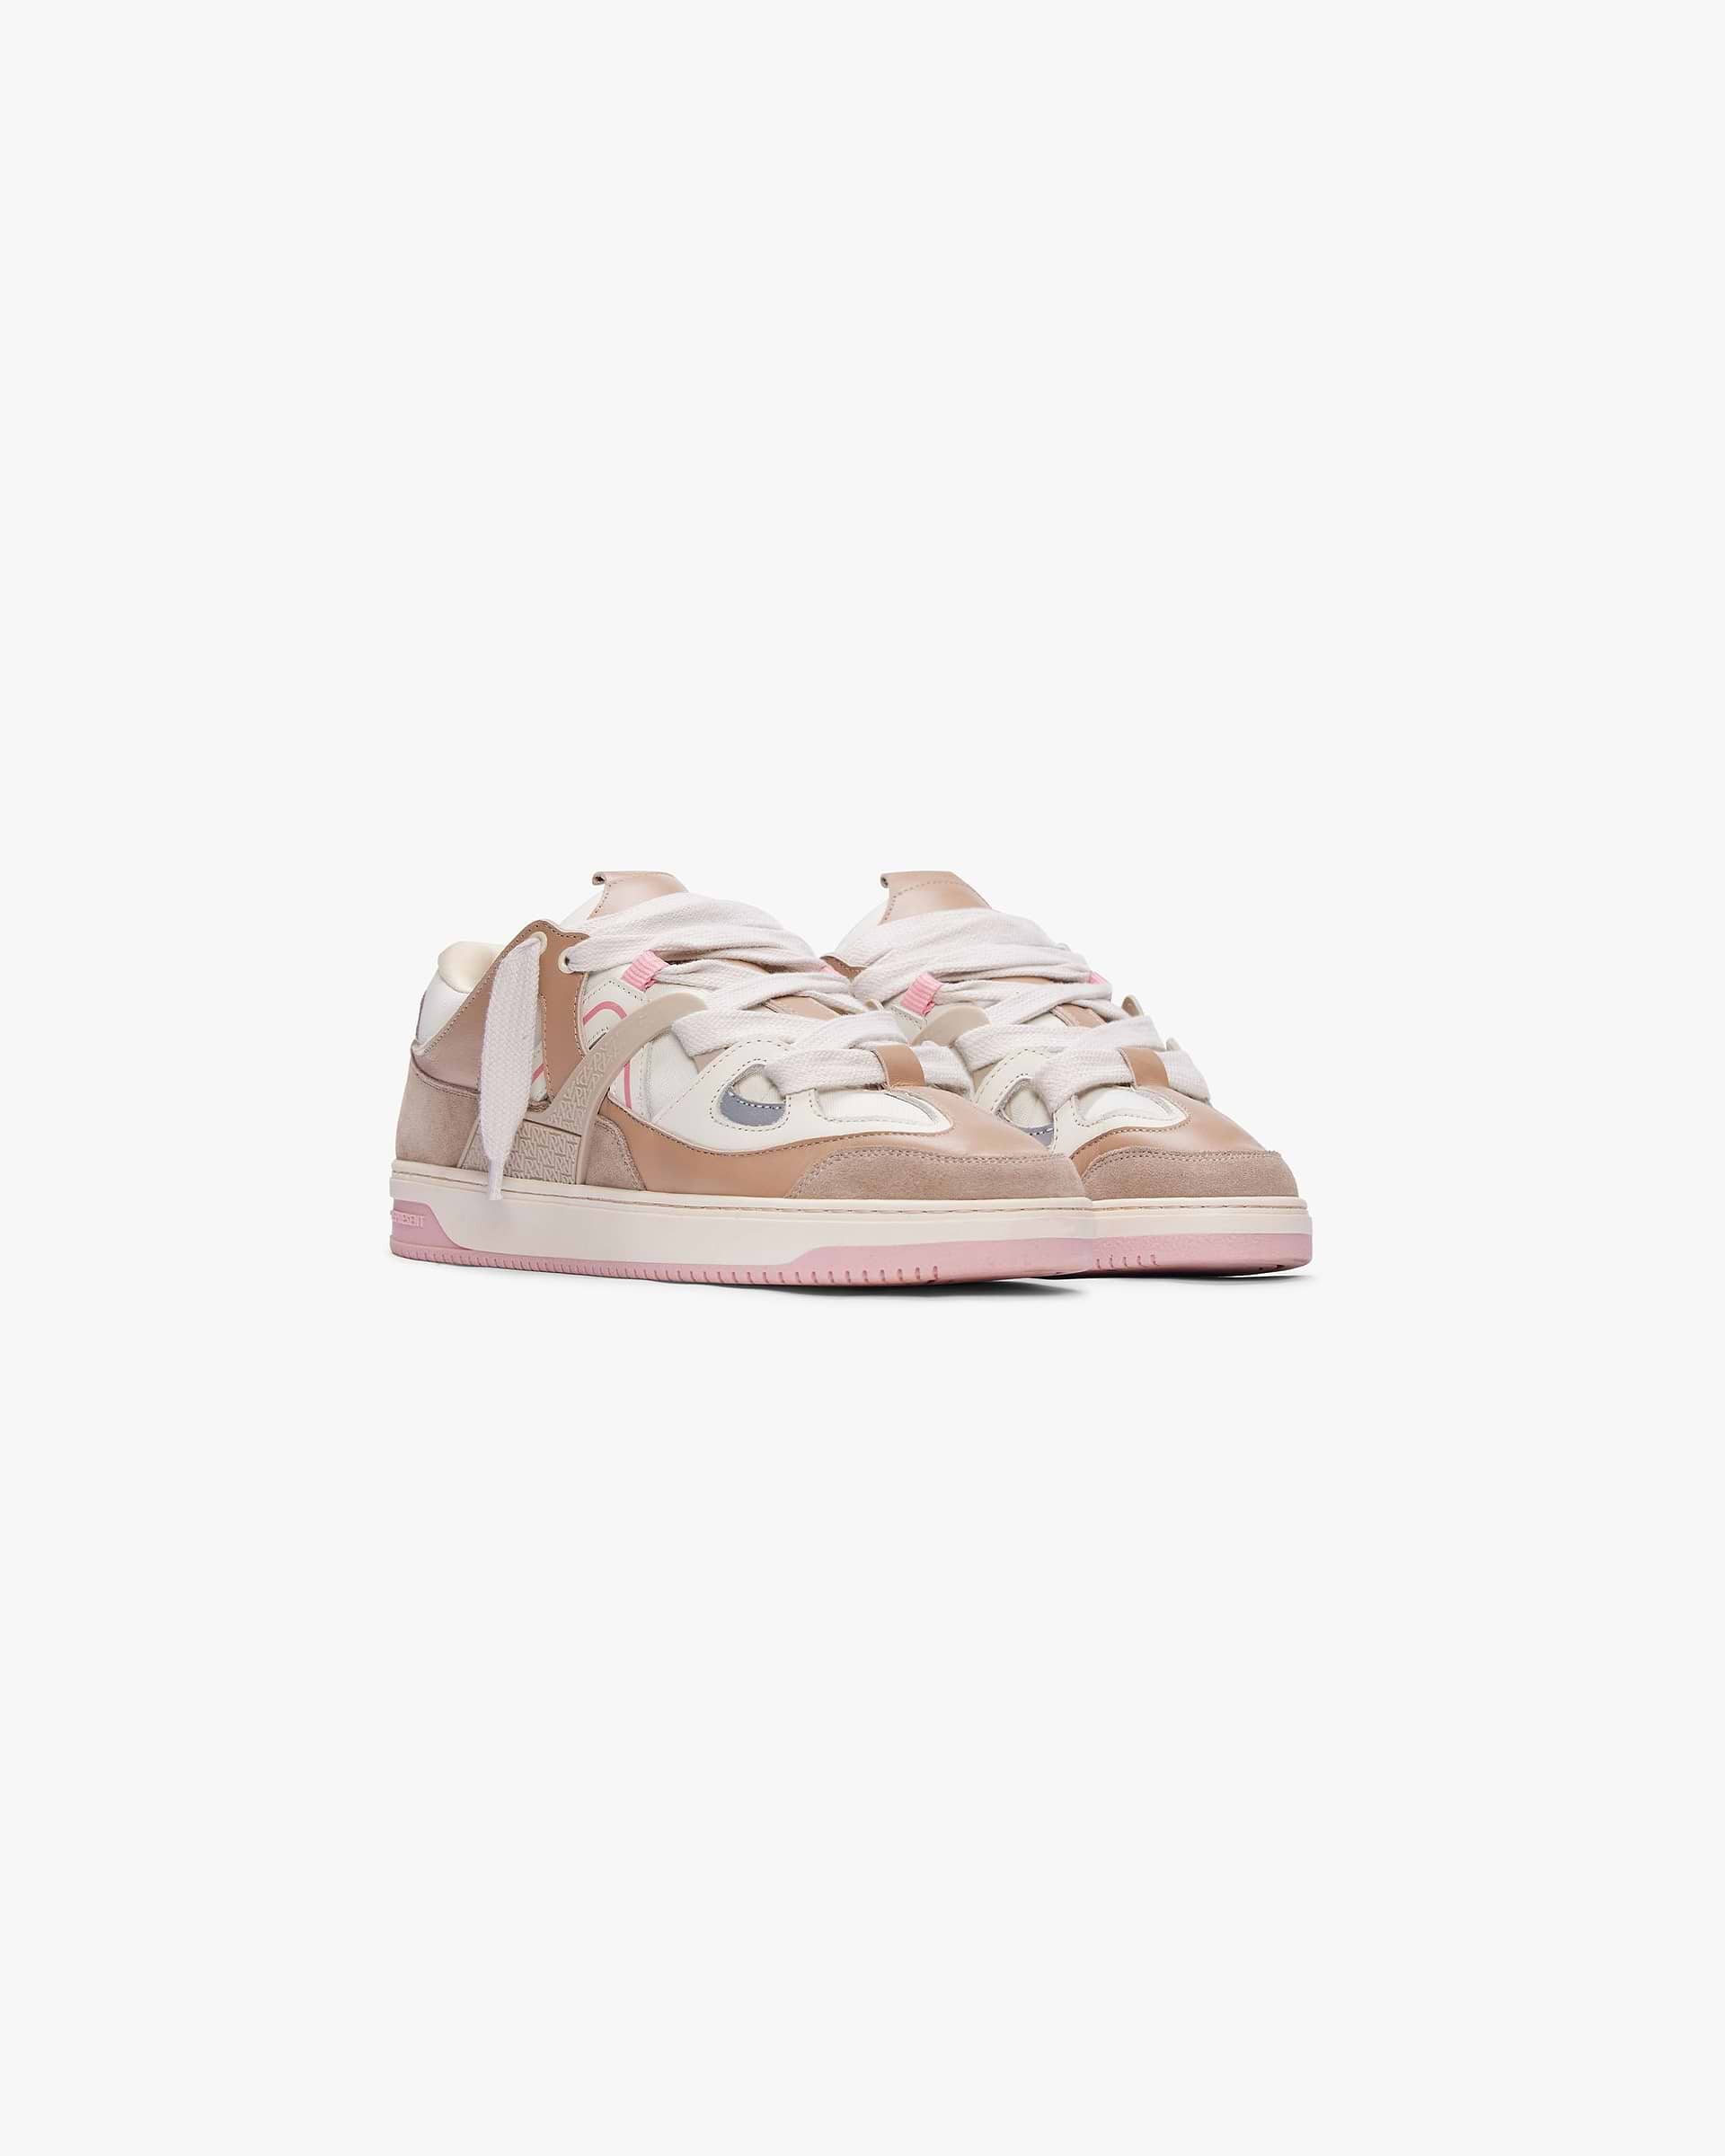 Bully Sneaker | Pink Footwear SC23 | Represent Clo